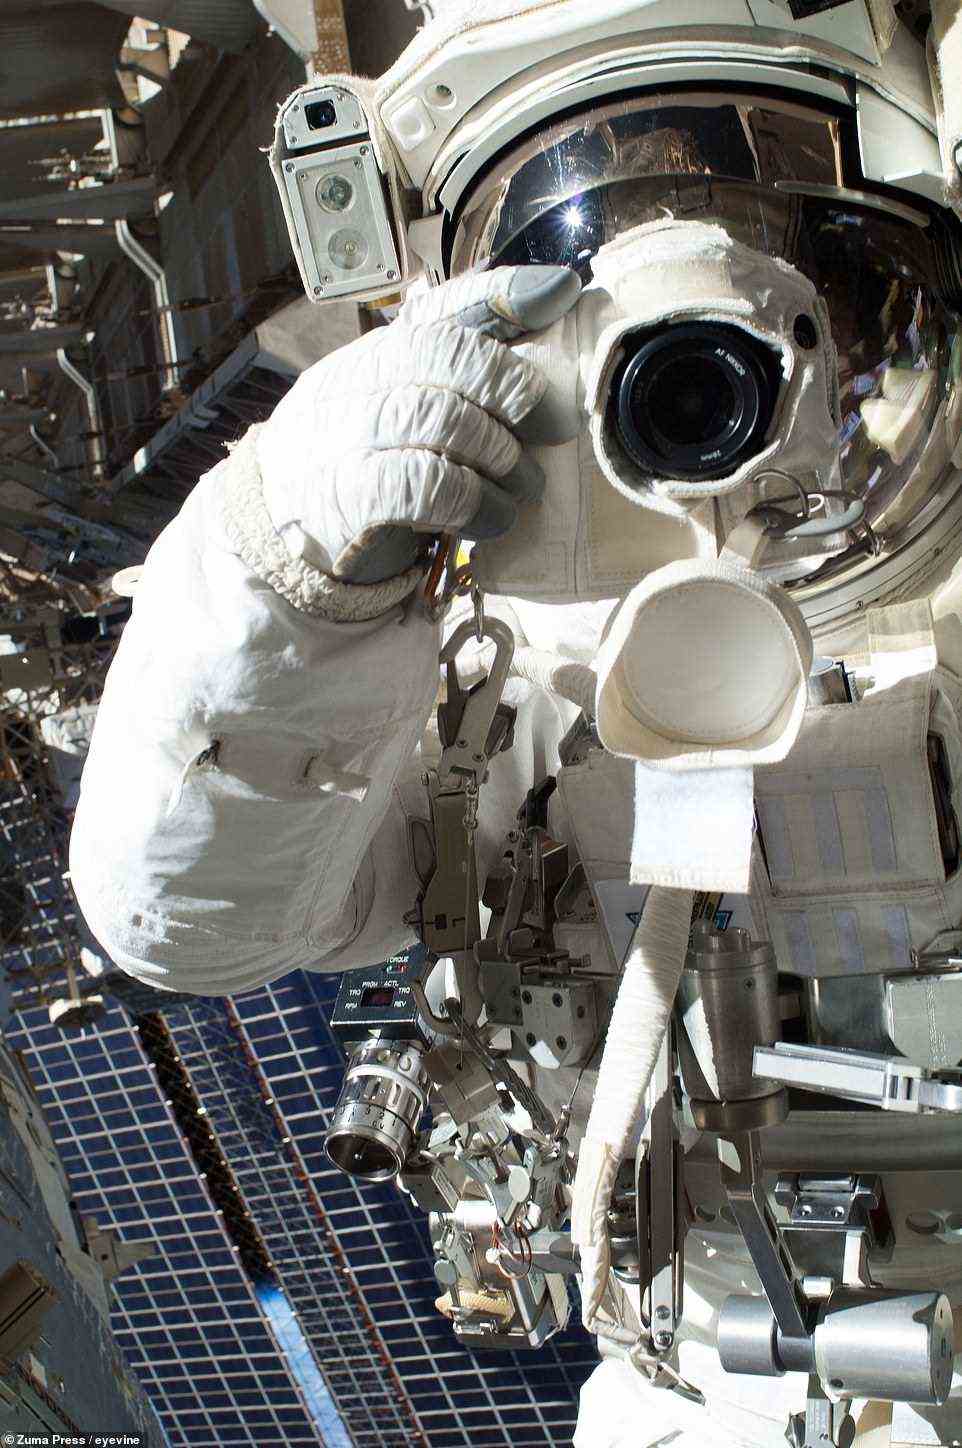 Chris Cassidy von der NASA macht am 16. Juli 2013 ein Selfie mit einer Digitalkamera, bevor sein Weltraumspaziergang nach kaum mehr als einer Stunde abgebrochen wurde.  Sein Astronaut-Kollege Luca Parmitano (der sich außerhalb des Rahmens befindet) hatte gemeldet, dass Wasser hinter seinem Kopf in seinem Helm schwamm.  Obwohl das Wasser kein unmittelbares Risiko darstellte, entschied sich Mission Control, die EVA vorzeitig zu beenden.